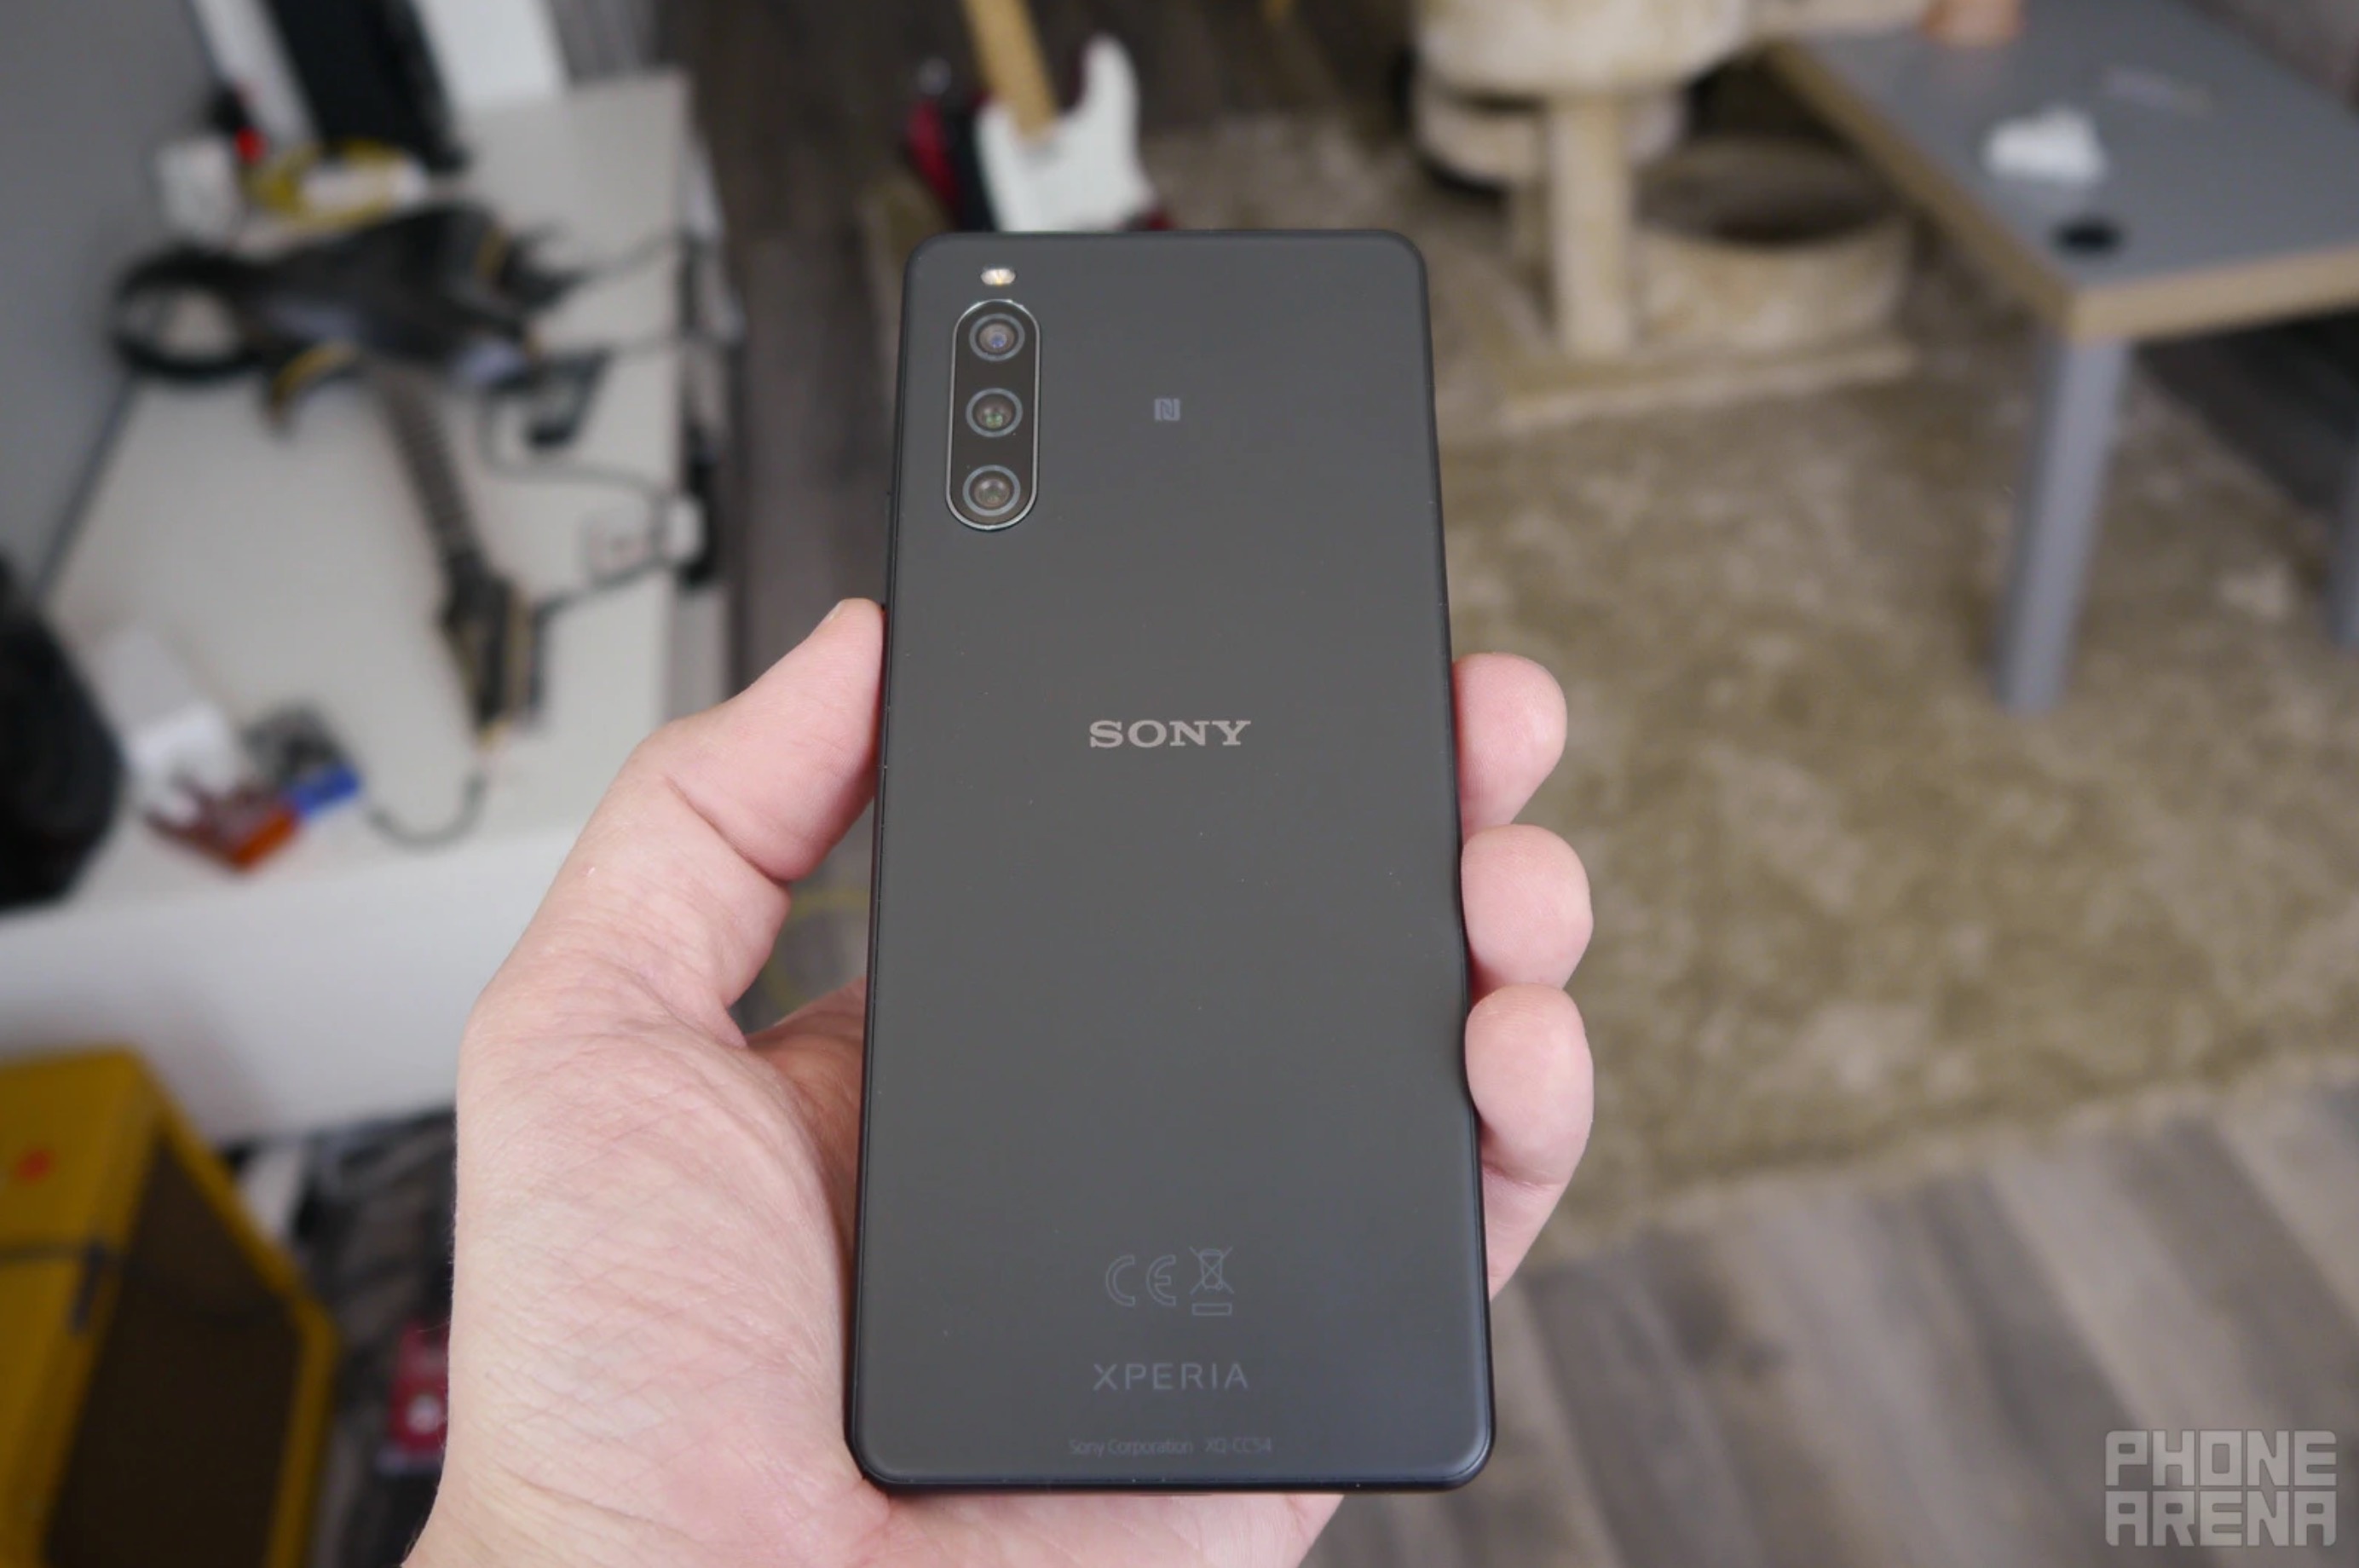 Smartphone mới của Sony có giá 1.600 USD, hệ thống camera đặc biệt - ảnh 13